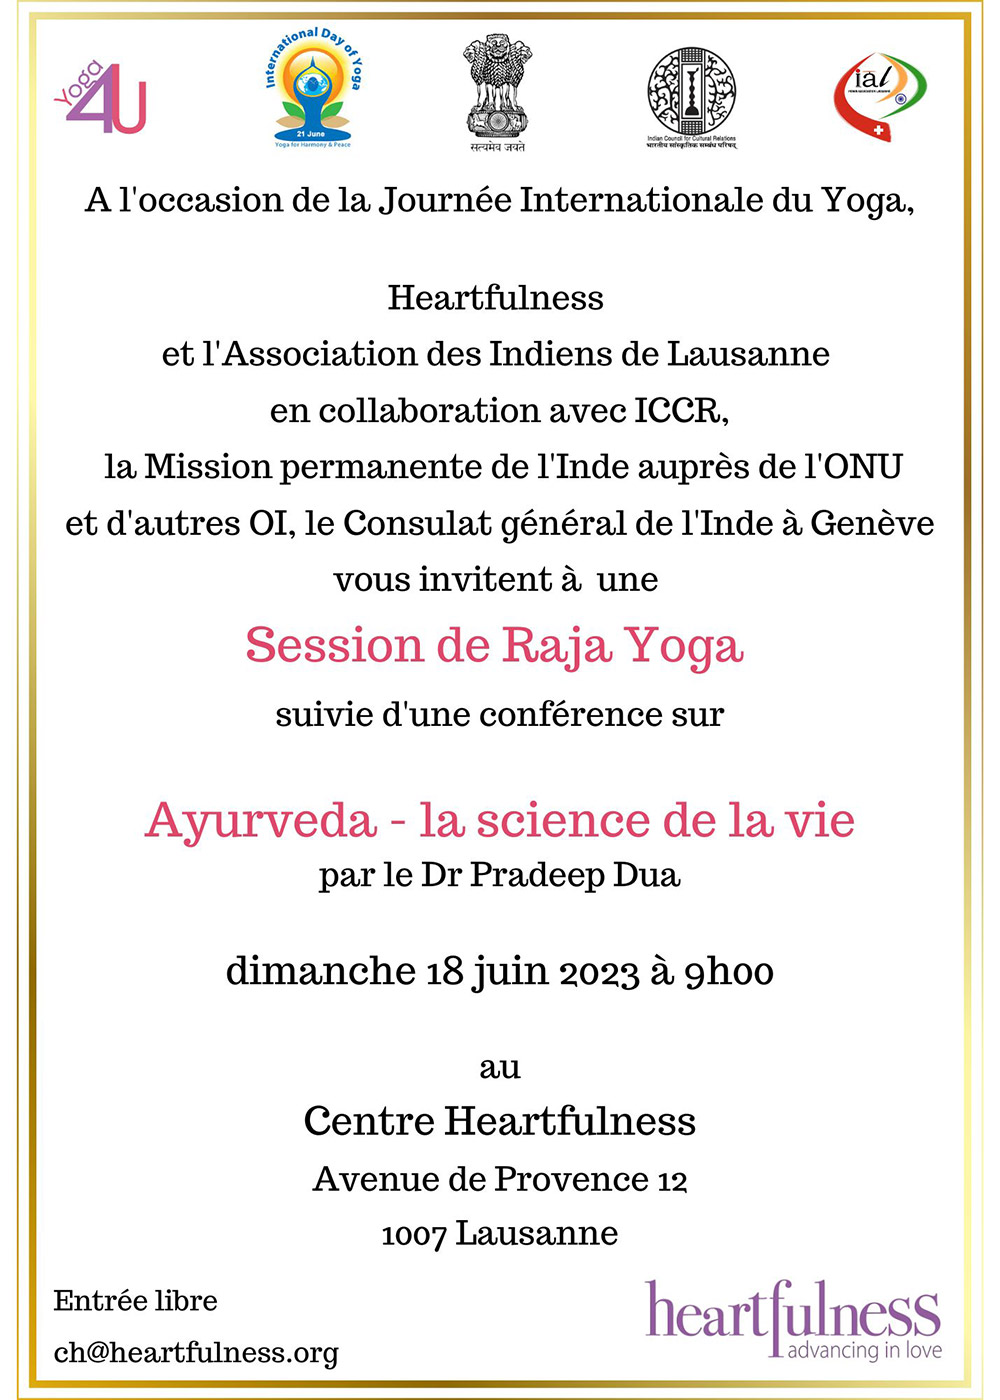 Journée Internationale du Yoga. Centre Heartfulness Lausanne. Session de Raja Yoga. Ayurveda - La science de la vie. 18 juin 2023. 